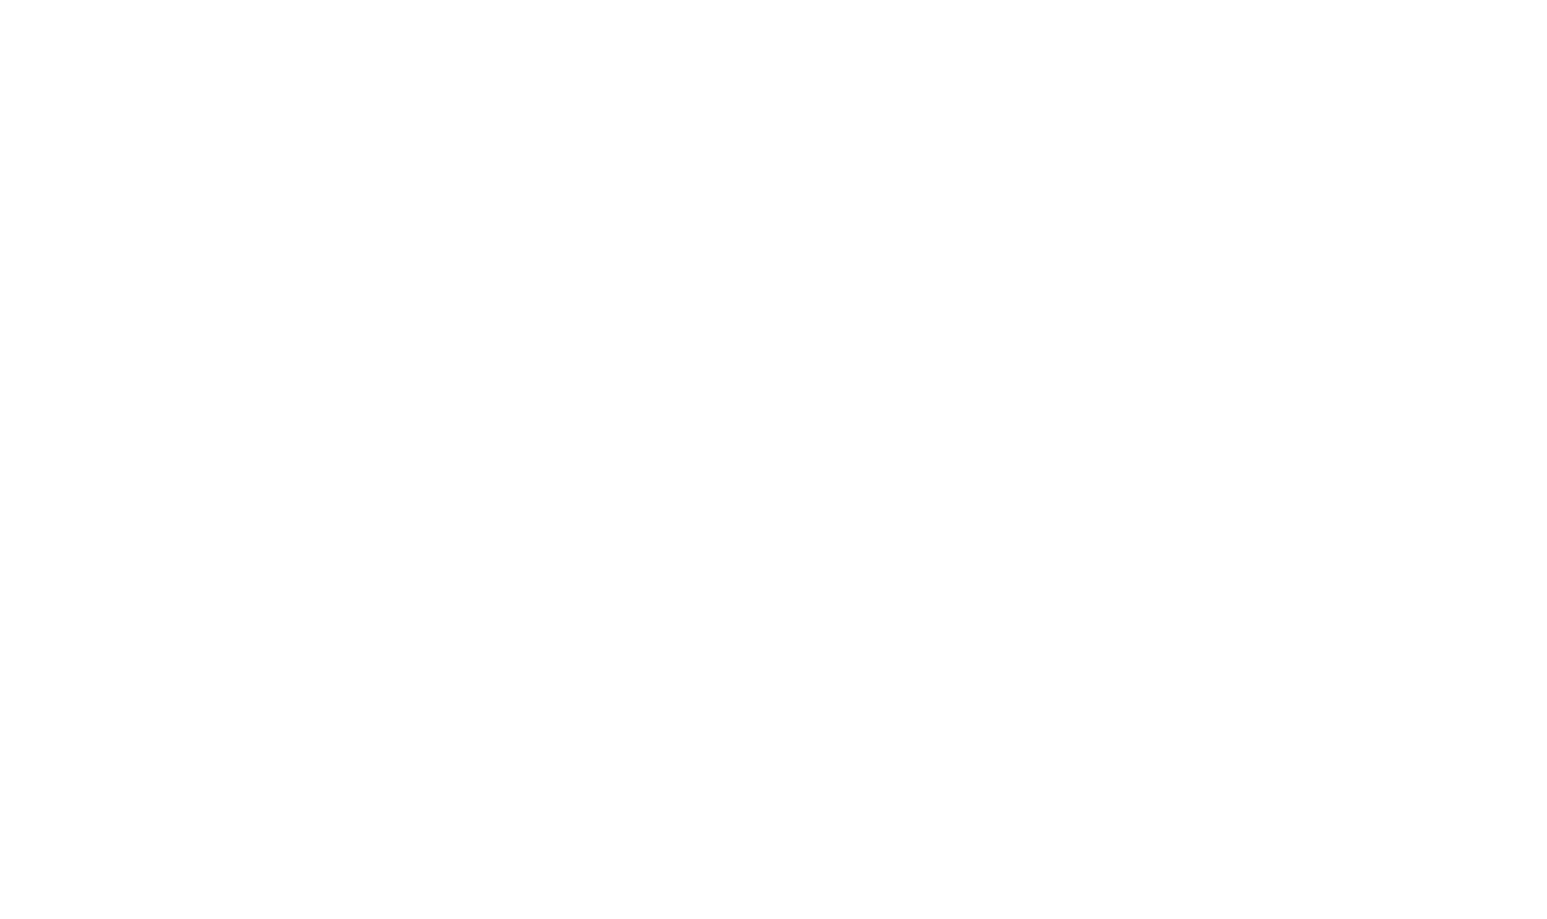 Marsh & McLennan Companies logo pour fonds sombres (PNG transparent)